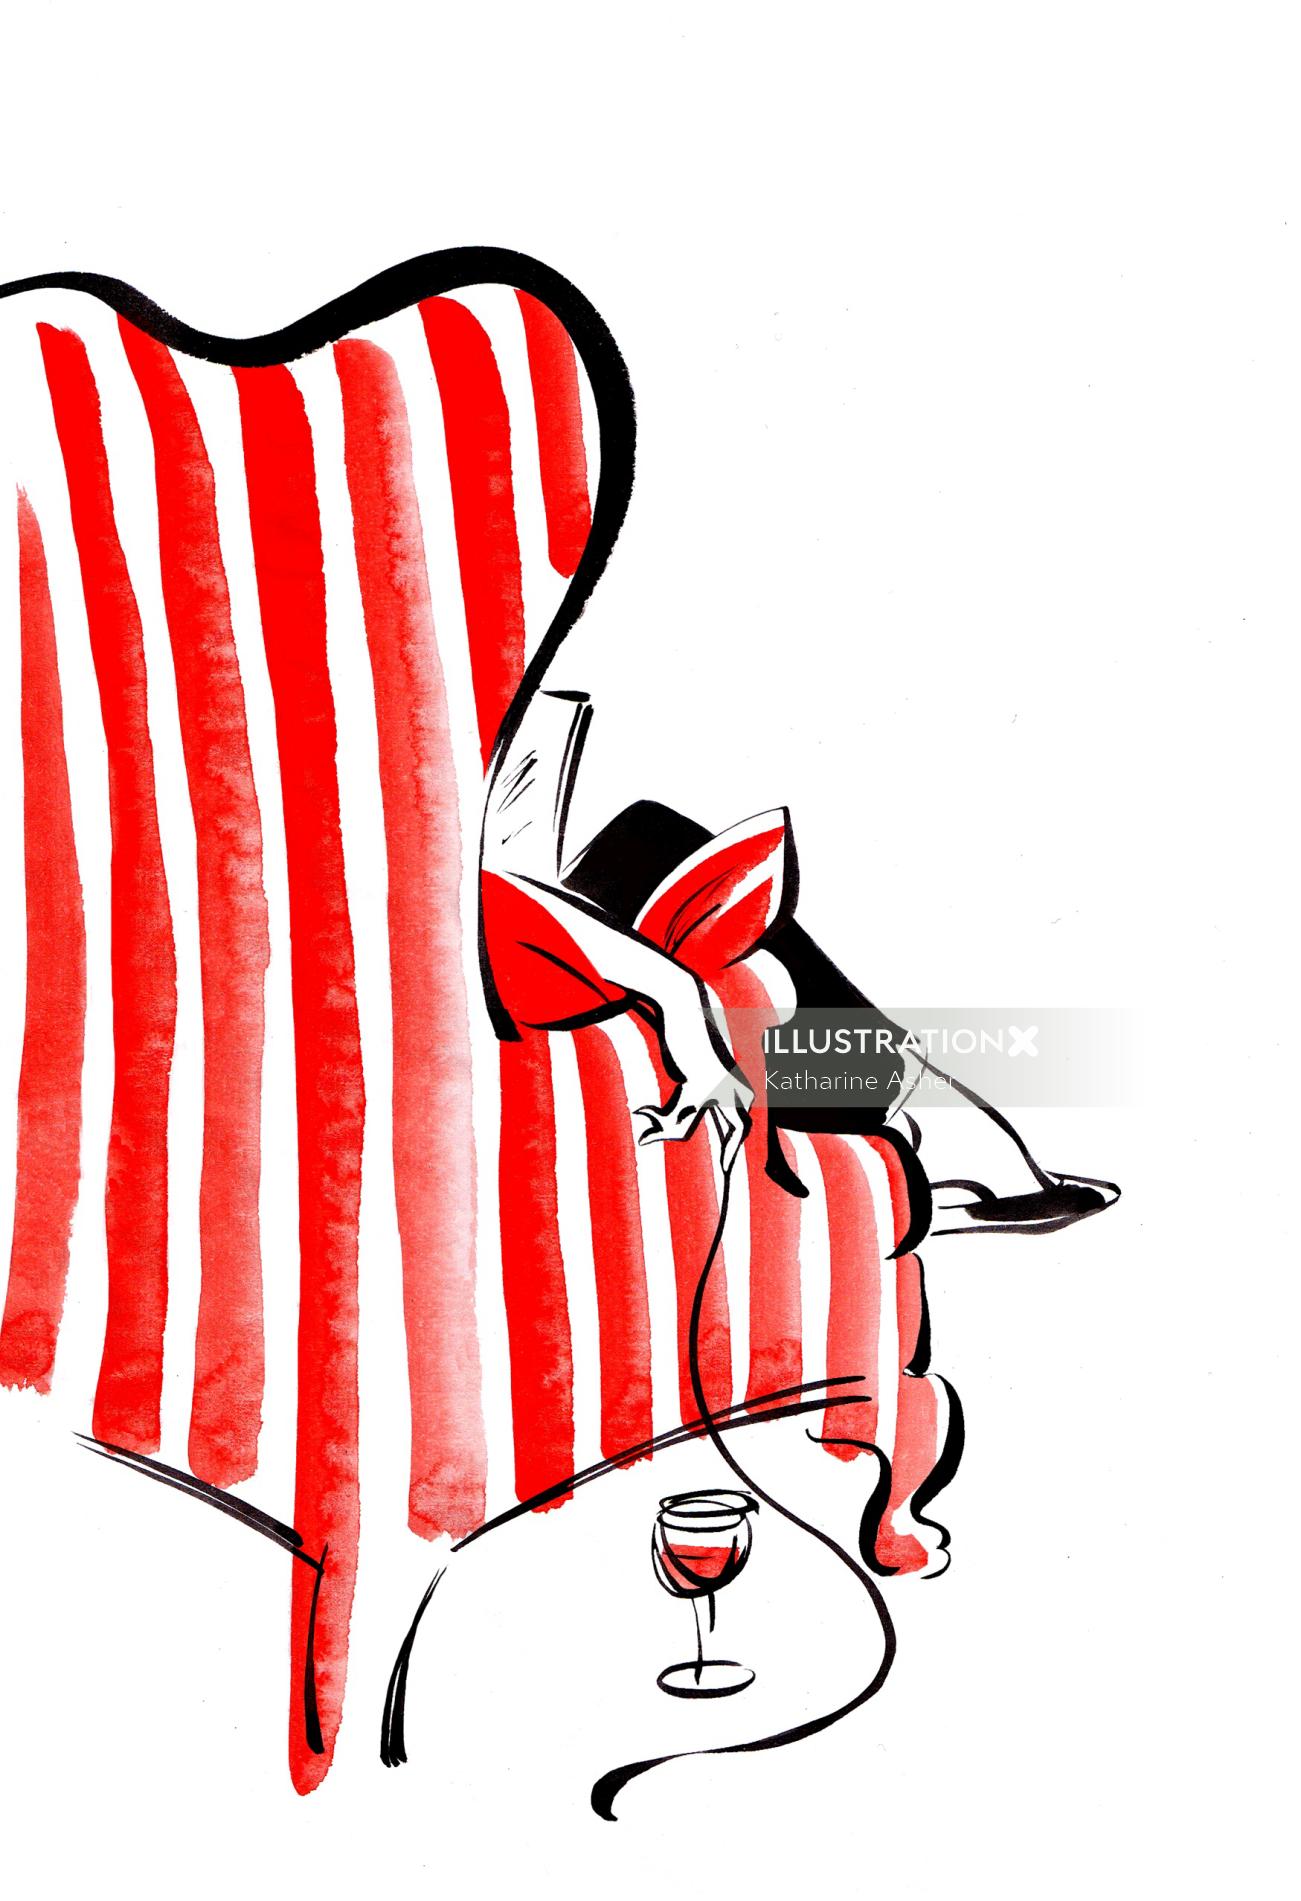 Illustration de surf en fauteuil par Katharine Asher